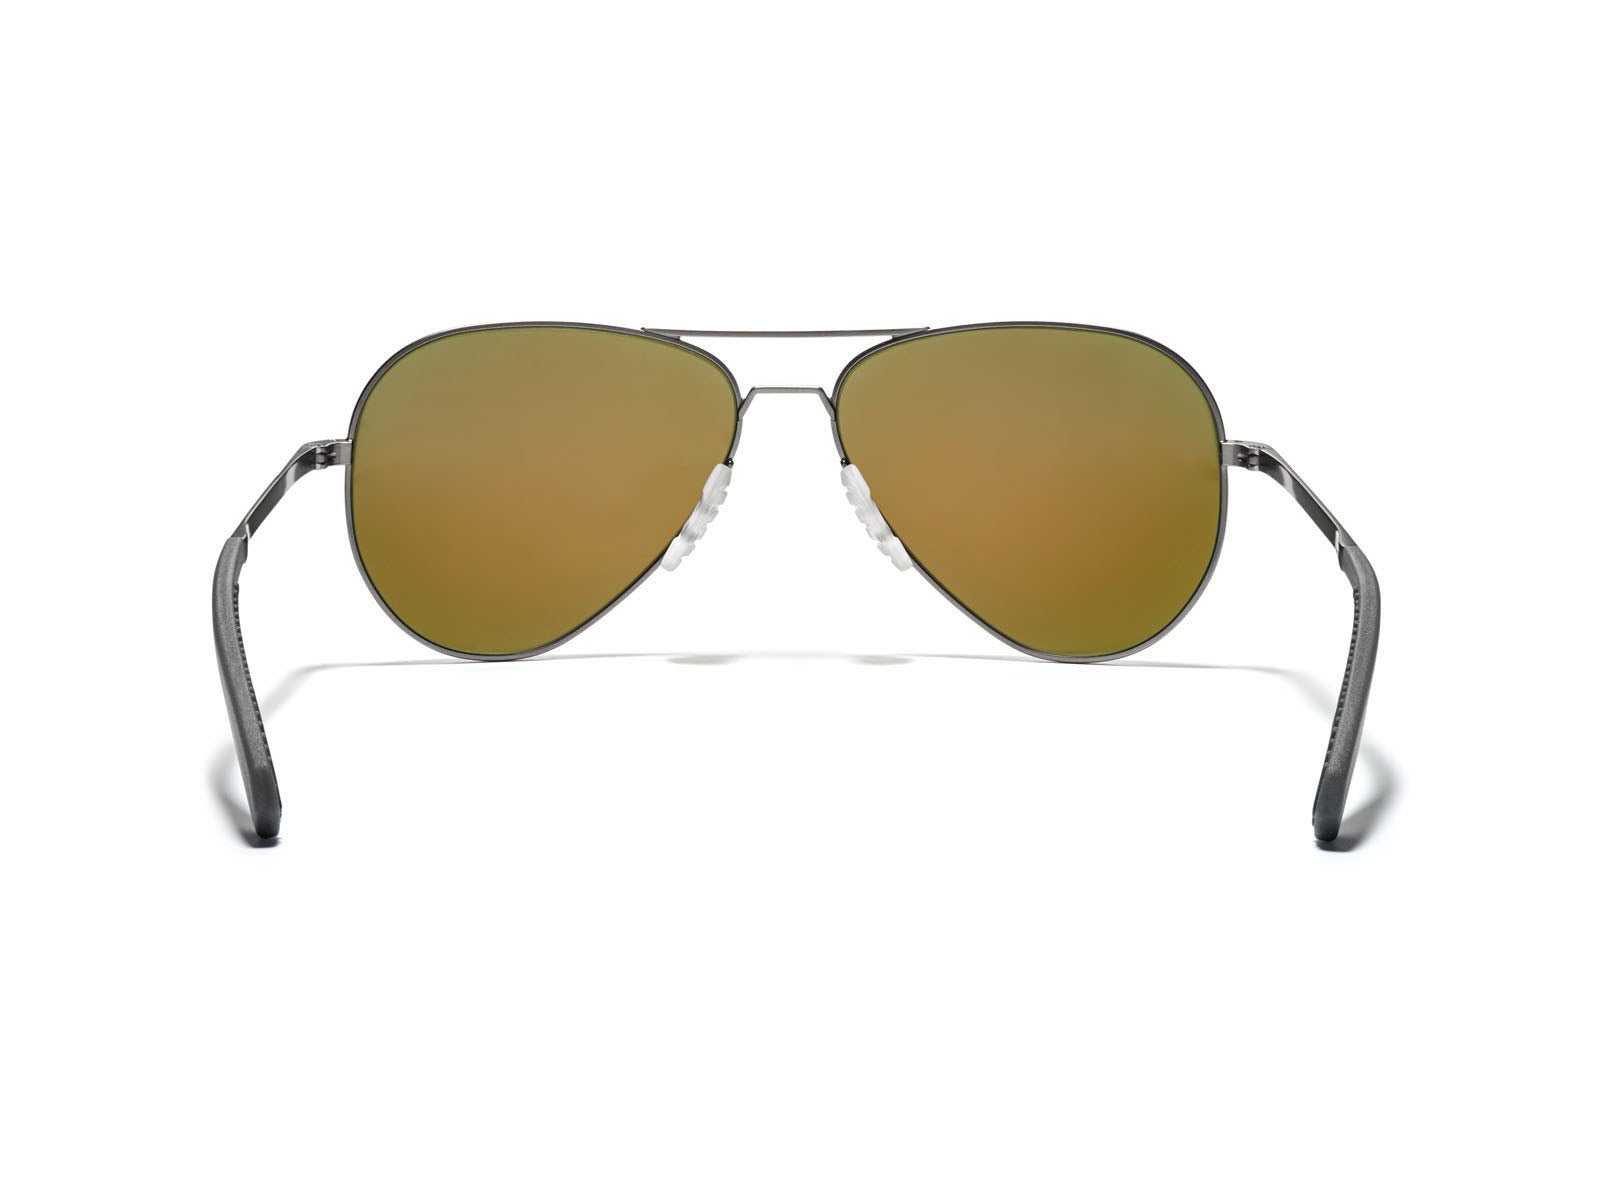 Buy ROKA AT-1x Ultralight Z87 Sunglasses for Men & Women